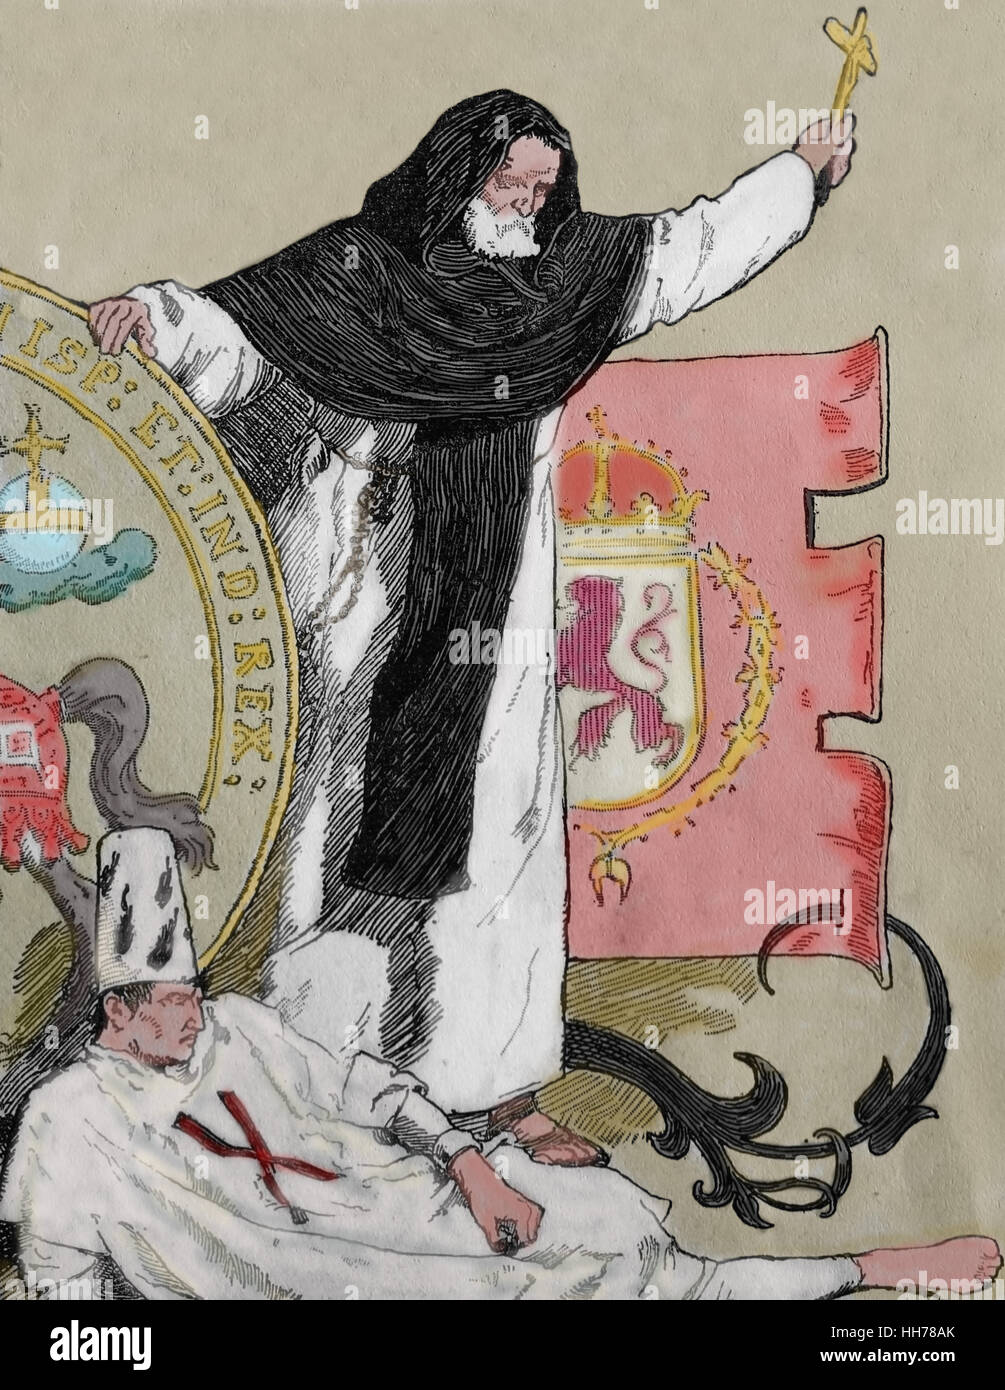 Reigh de Philippe II d'Espagne (1527-1598). Inquisition espagnole. prisonnier portant un sanbenito et membre de l'Ordre dominicain. Gravure, 1882. Banque D'Images